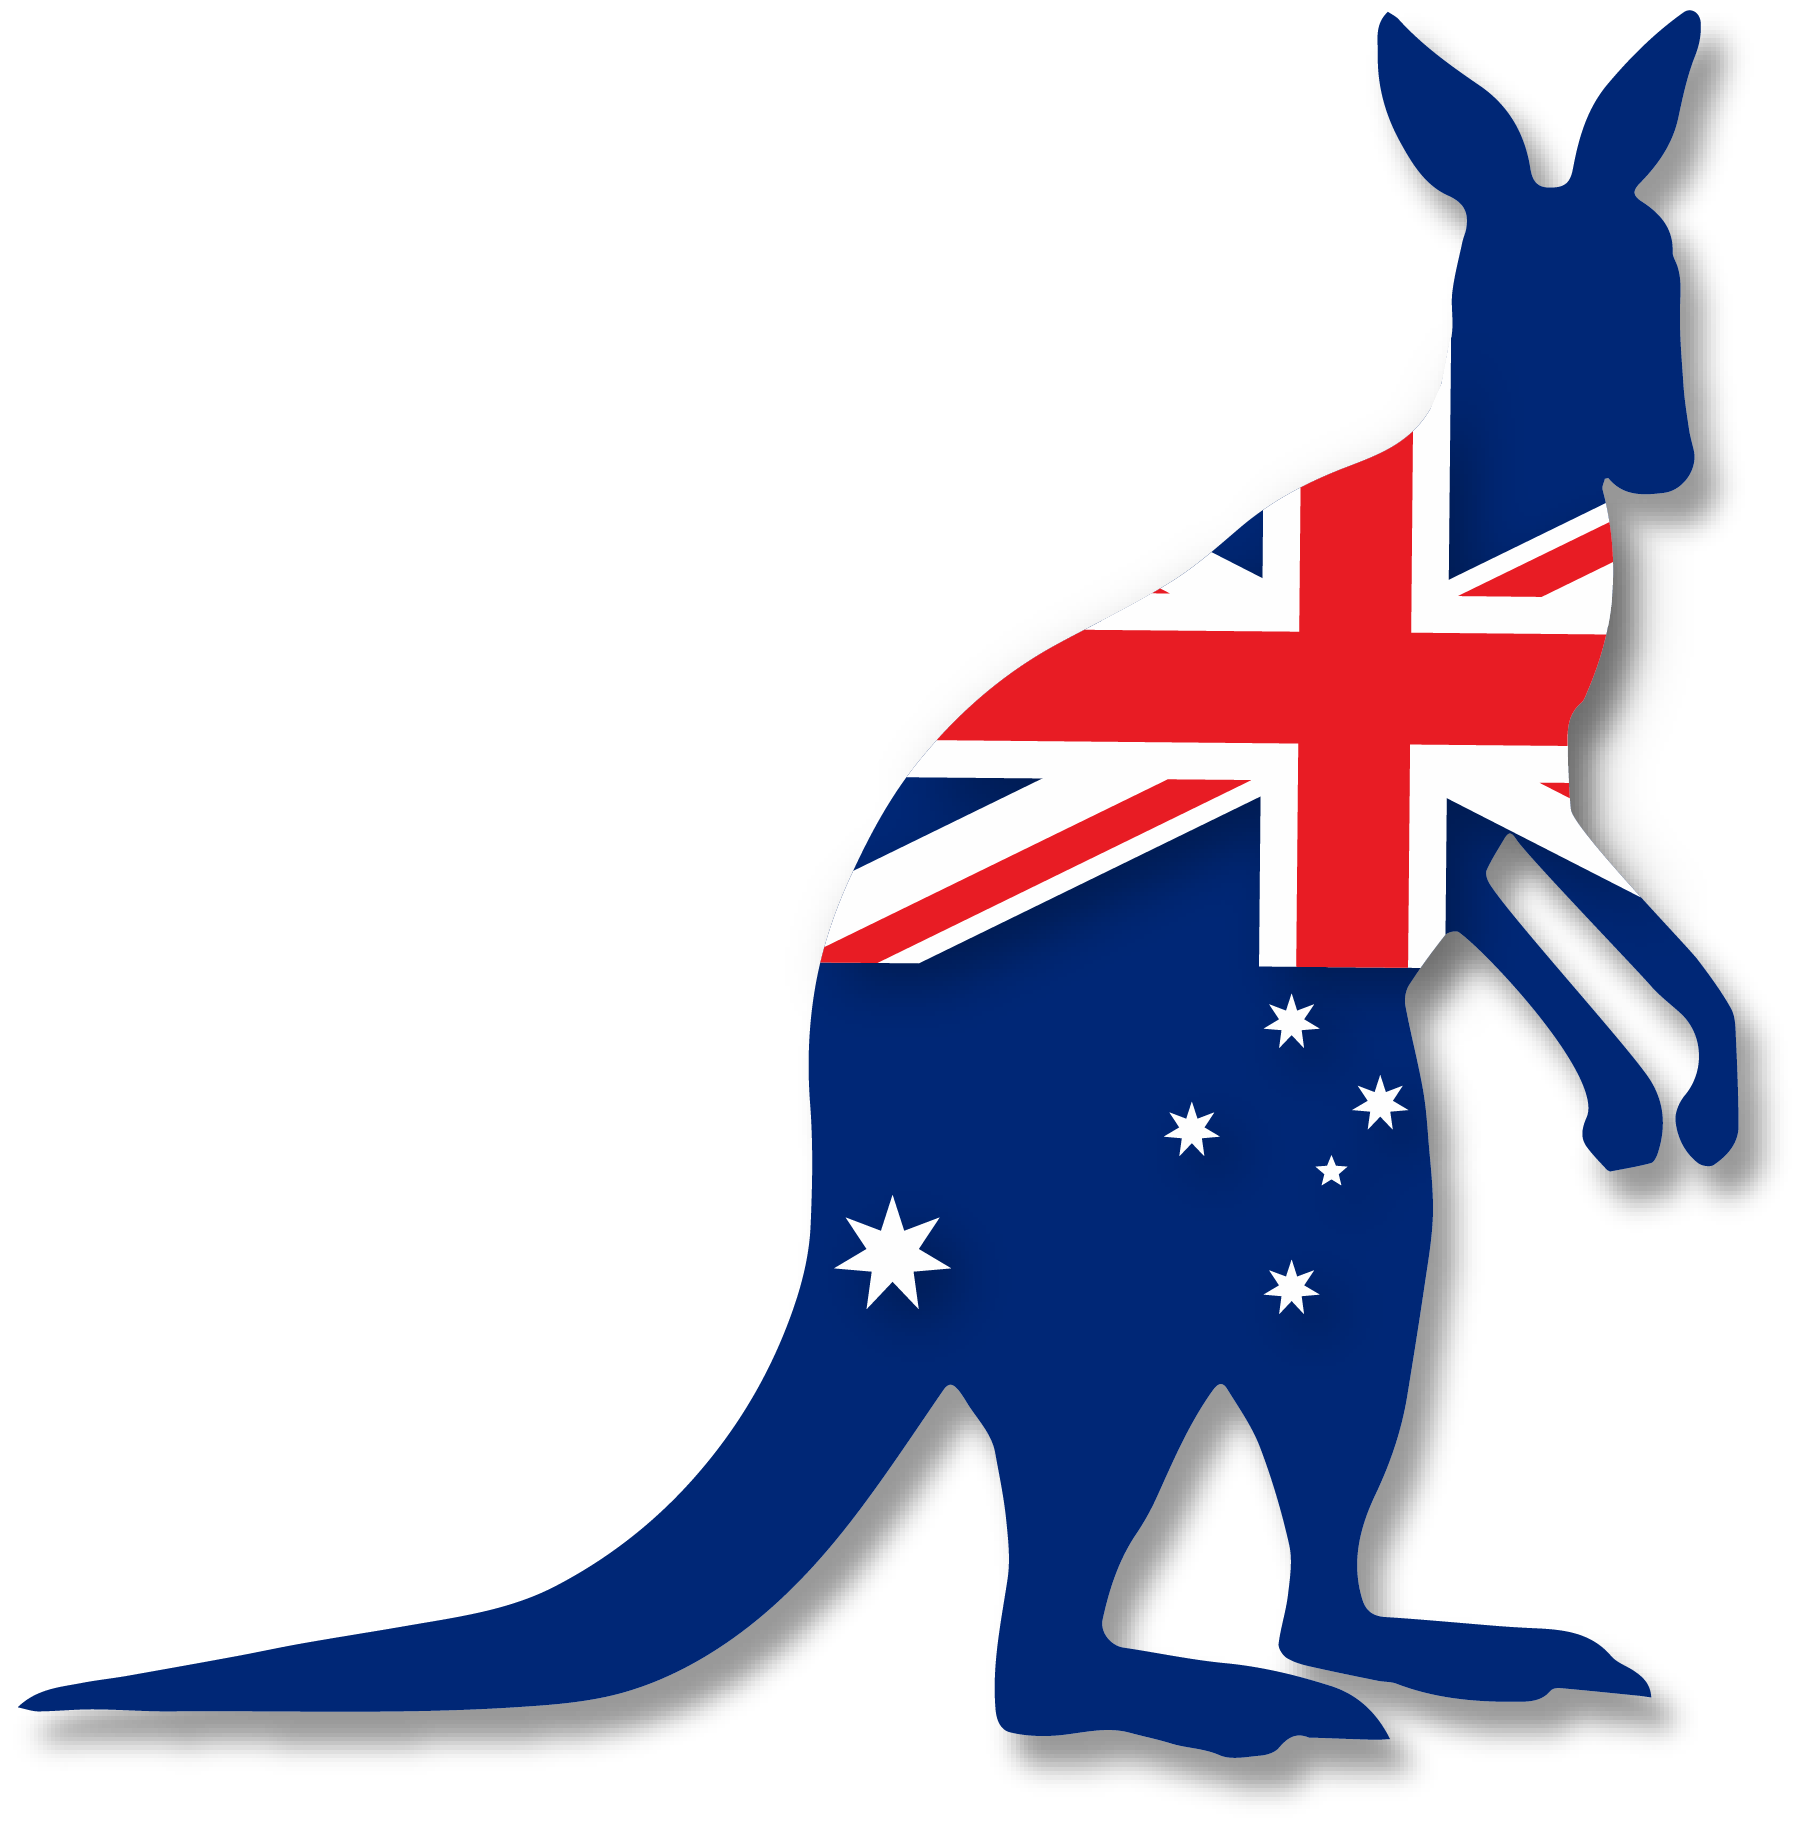 kangaroo clipart transparent background